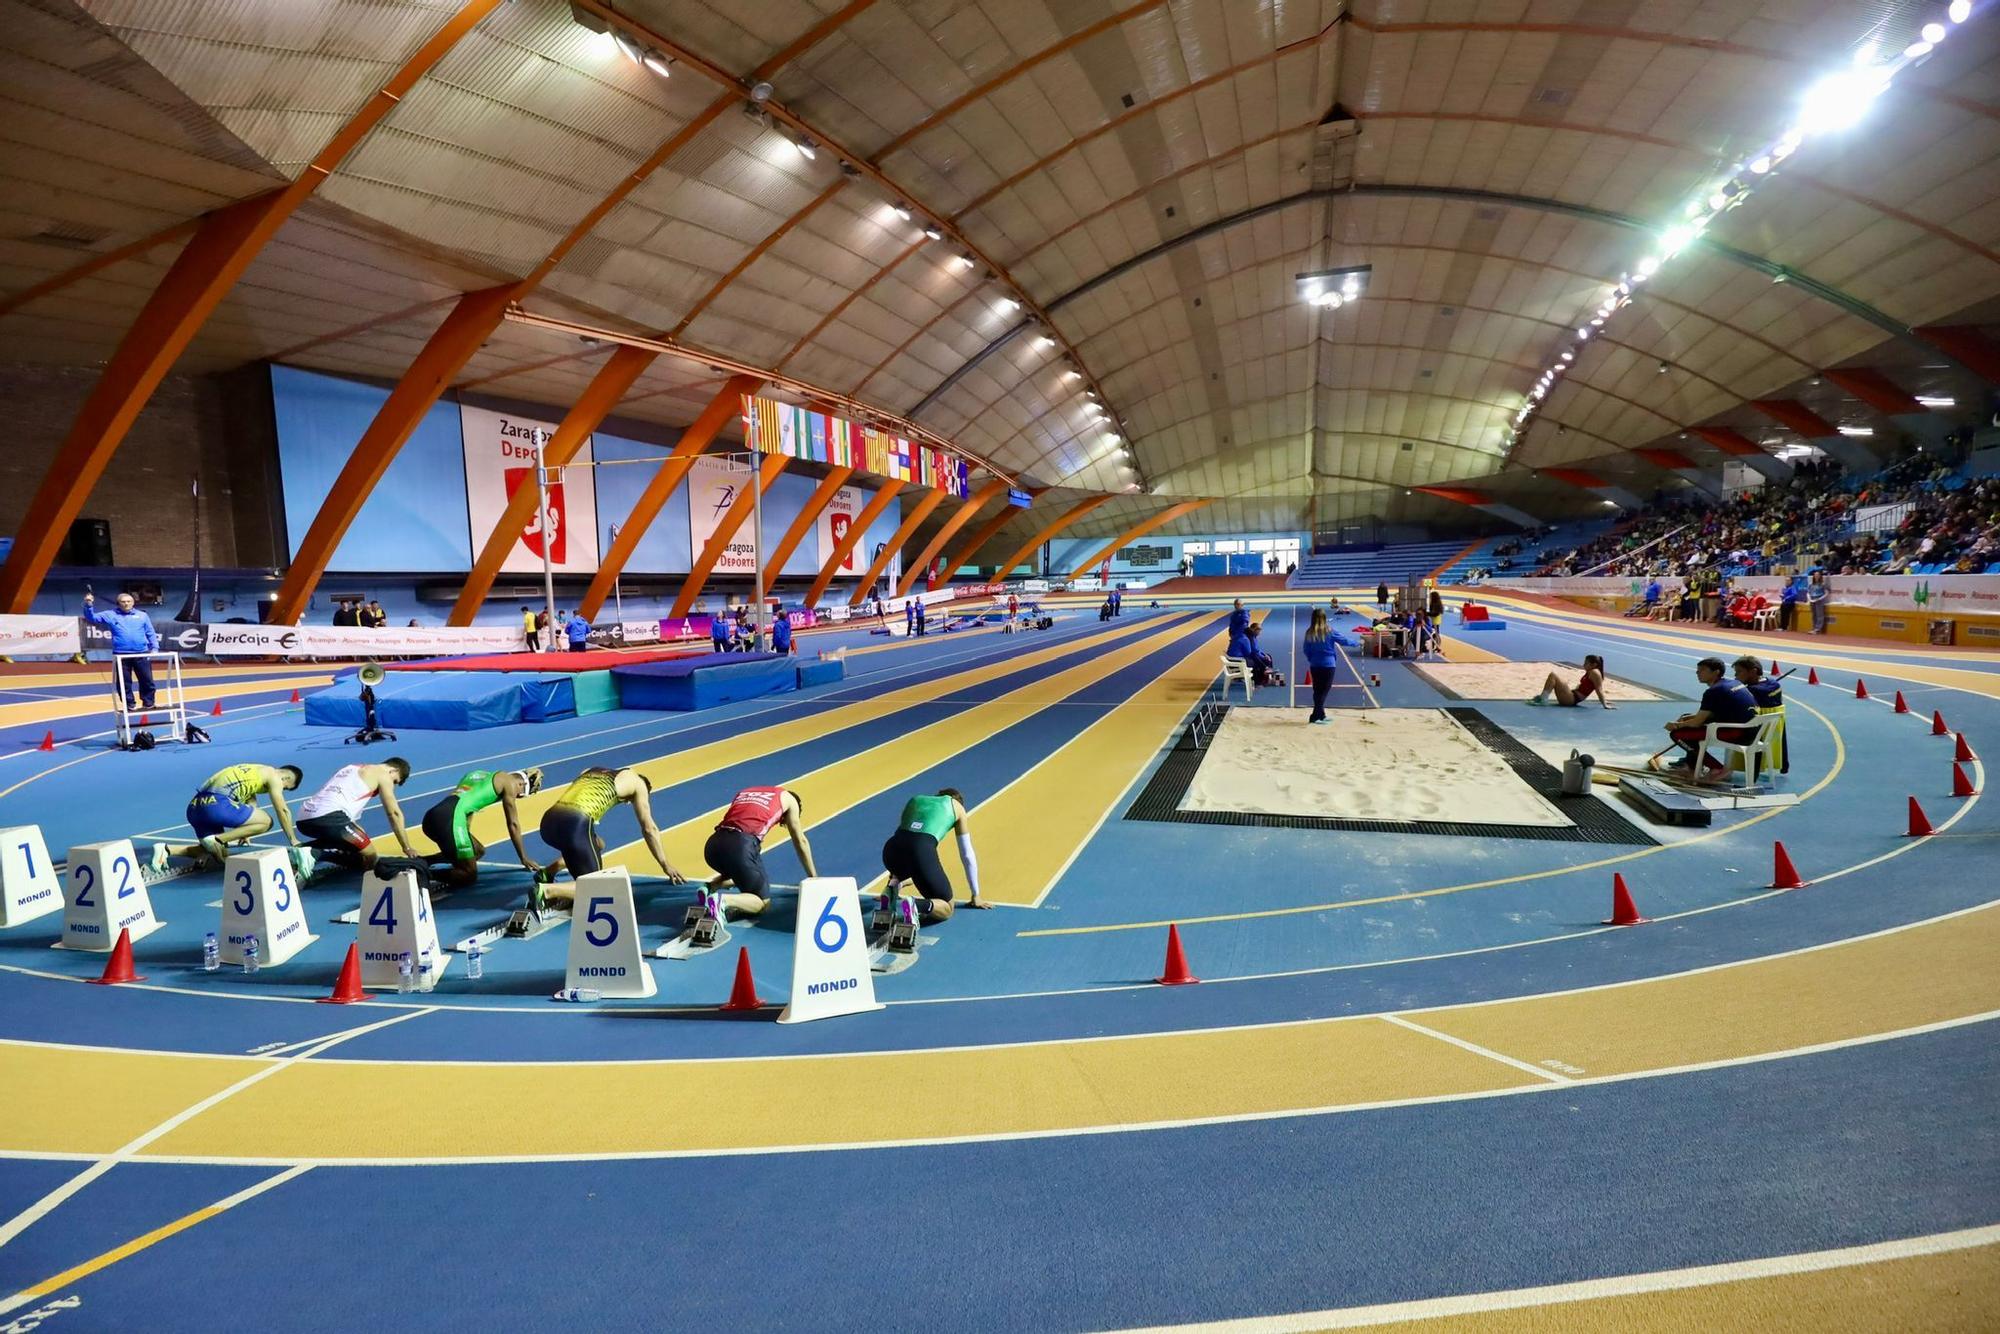 EN IMÁGENES | El Palacio de Deportes acoge el Trofeo Ibercaja "Ciudad de Zaragoza" de atletismo en pista cubierta